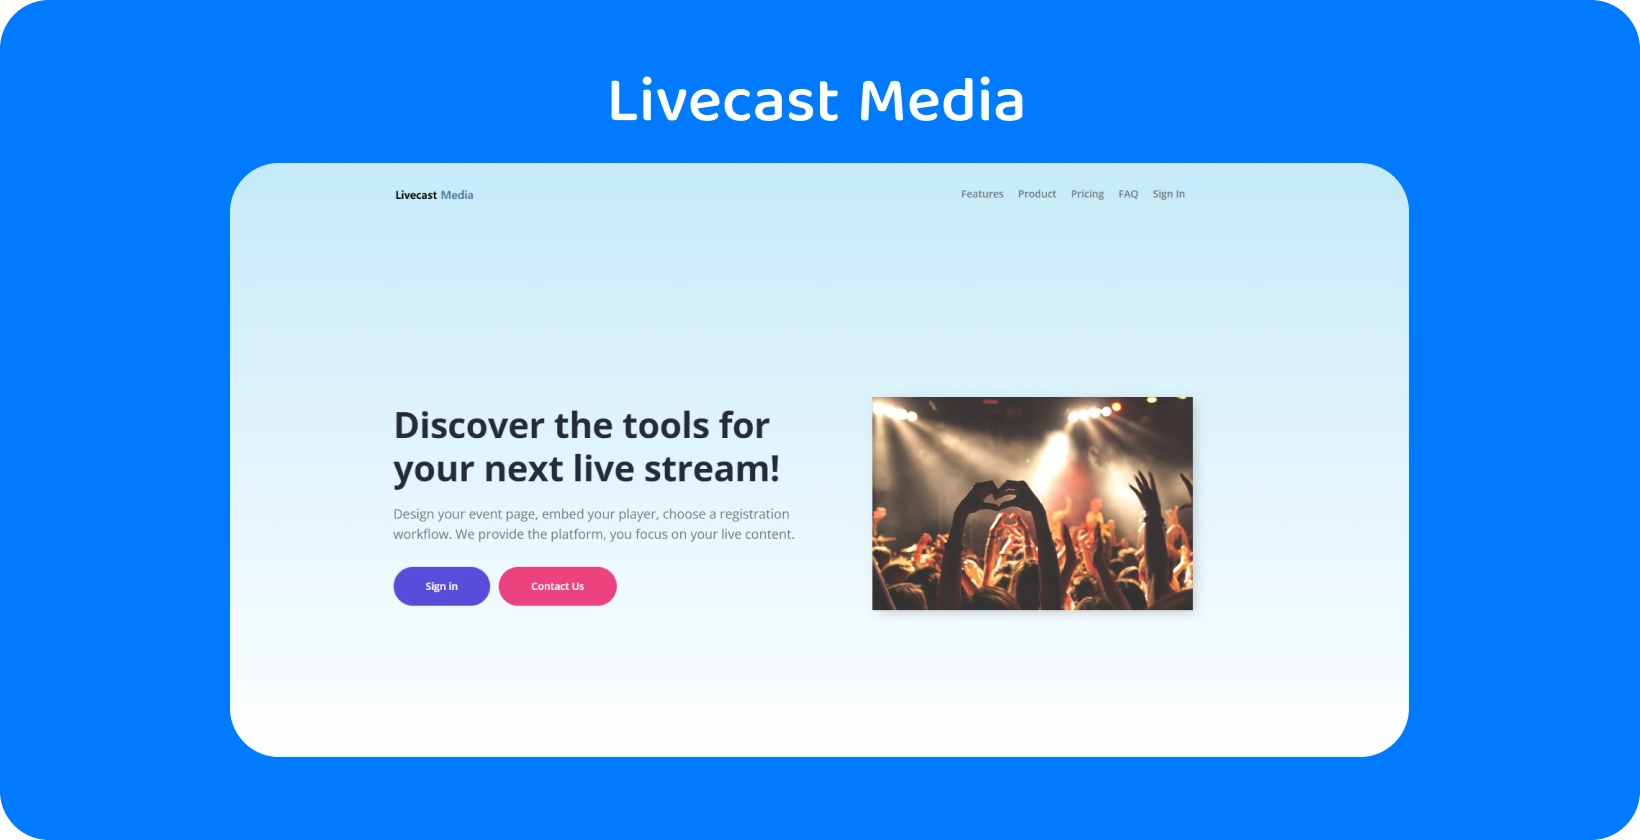 使用 Livecast Media 的流媒体工具与观众互动，非常适合创建令人难忘的现场活动。